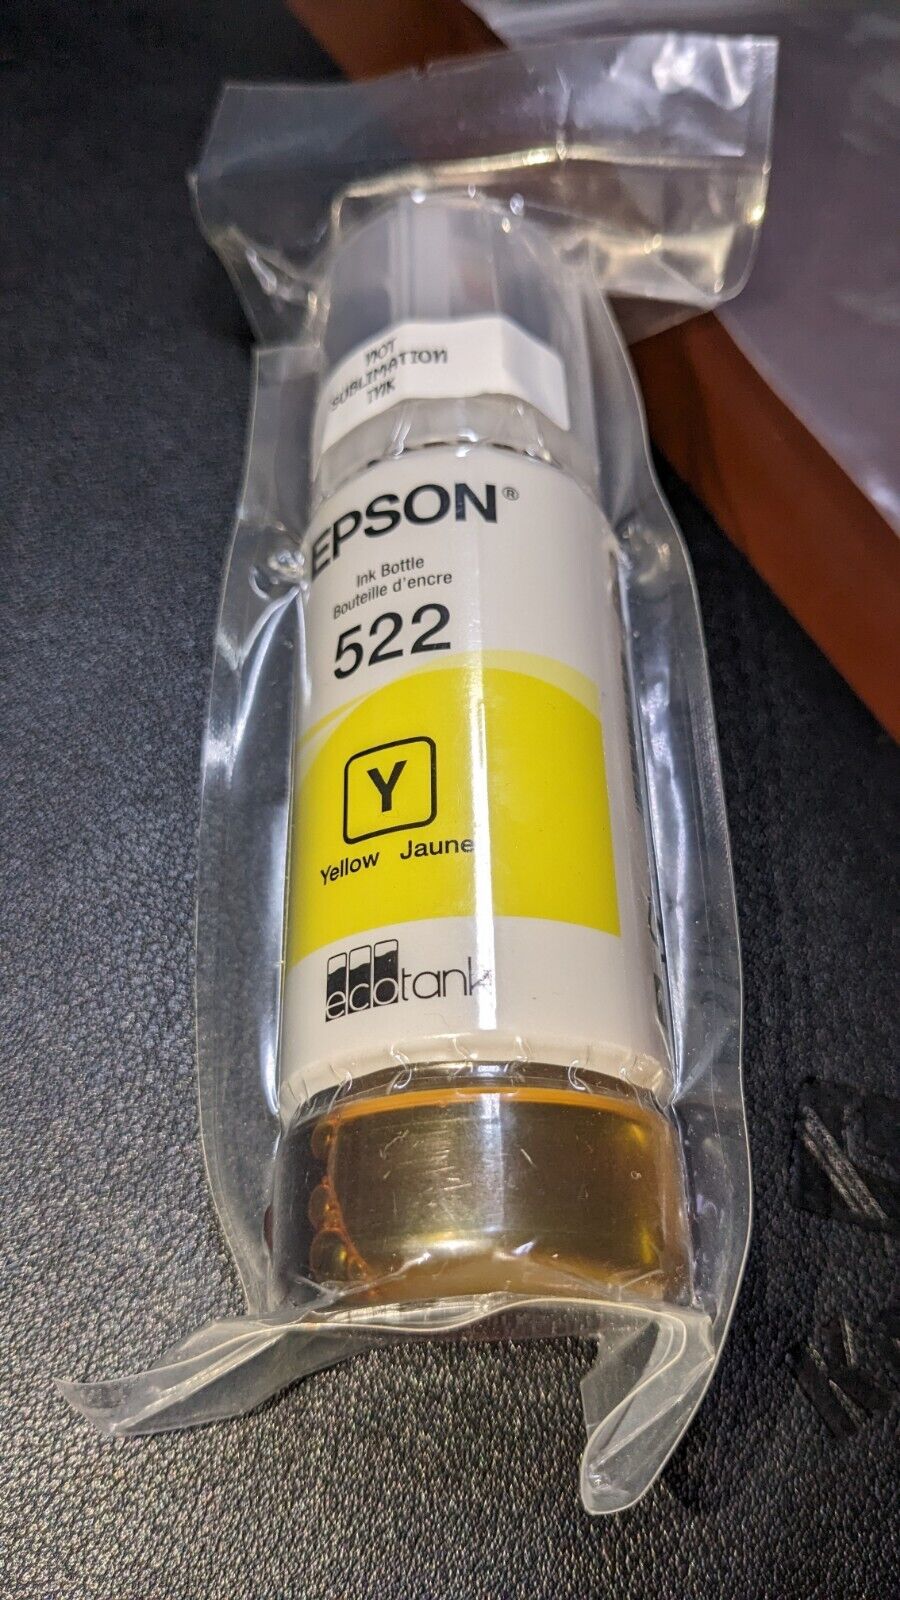 Genuine Epson 522 Single Yellow Ink Bottle Exp. 3/2027 - New - Sealed - No Box